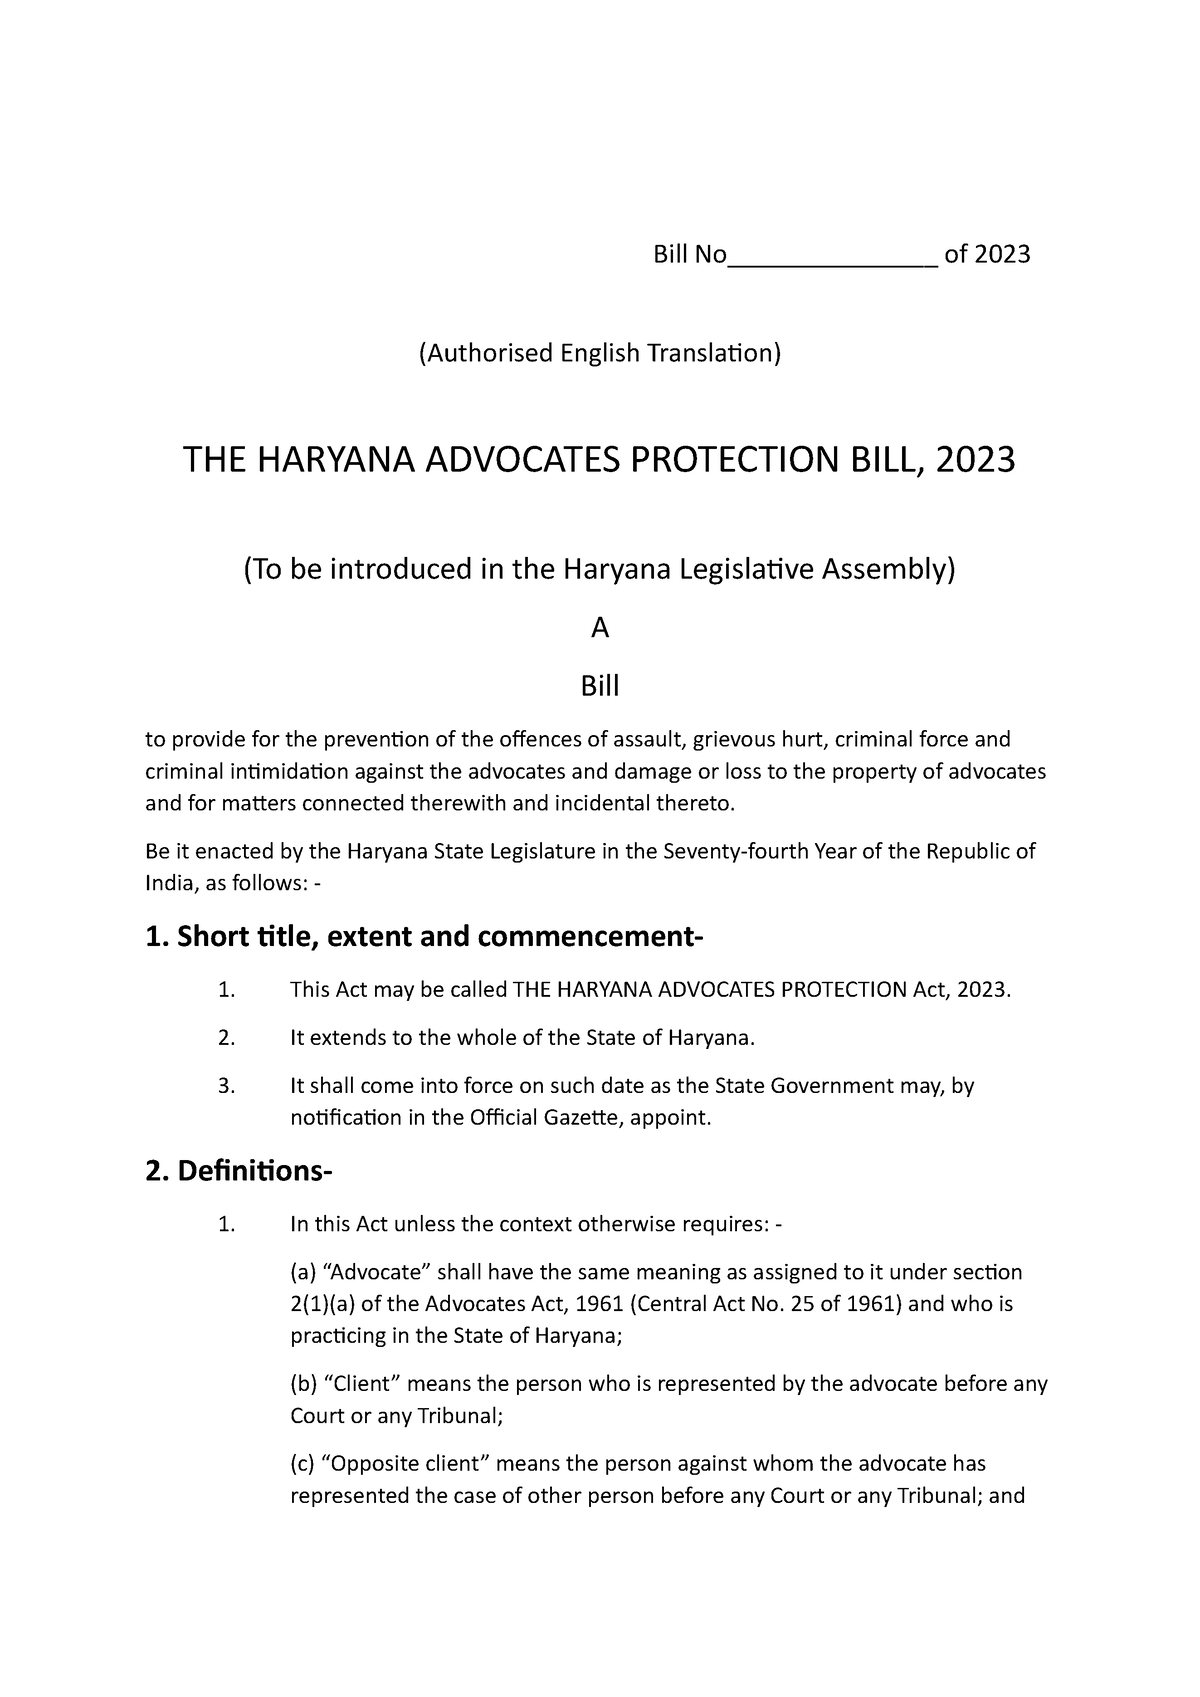 Bill Haryana Advocates Protection 2023 Draft Bill No